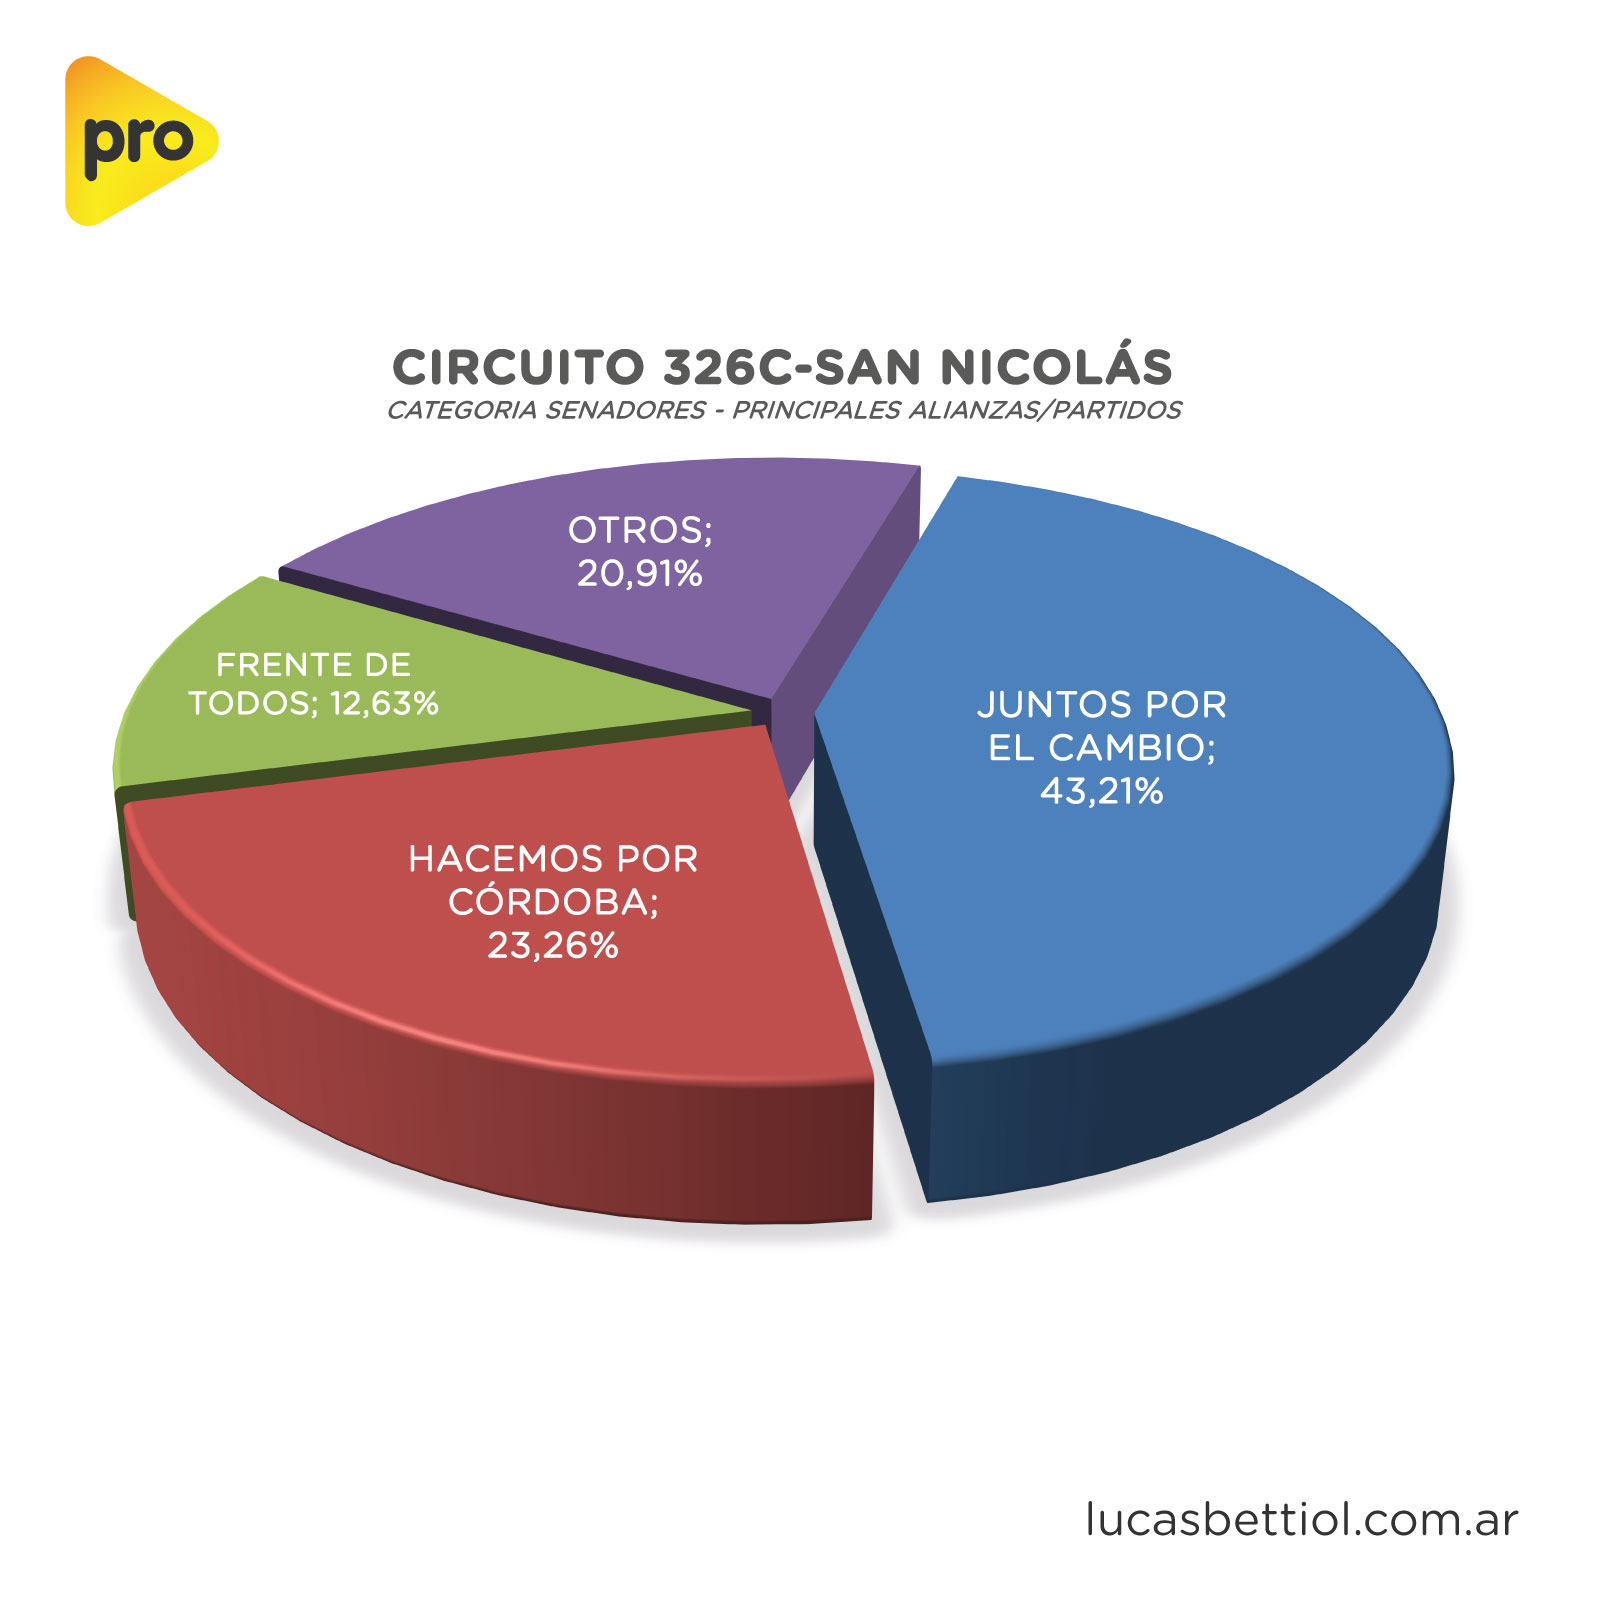 Elecciones PASO 2021 - Categoría Senadores - Gráfica de porcentuales que obtuvieron en el circuito 326C-San Nicolás las principales alianzas